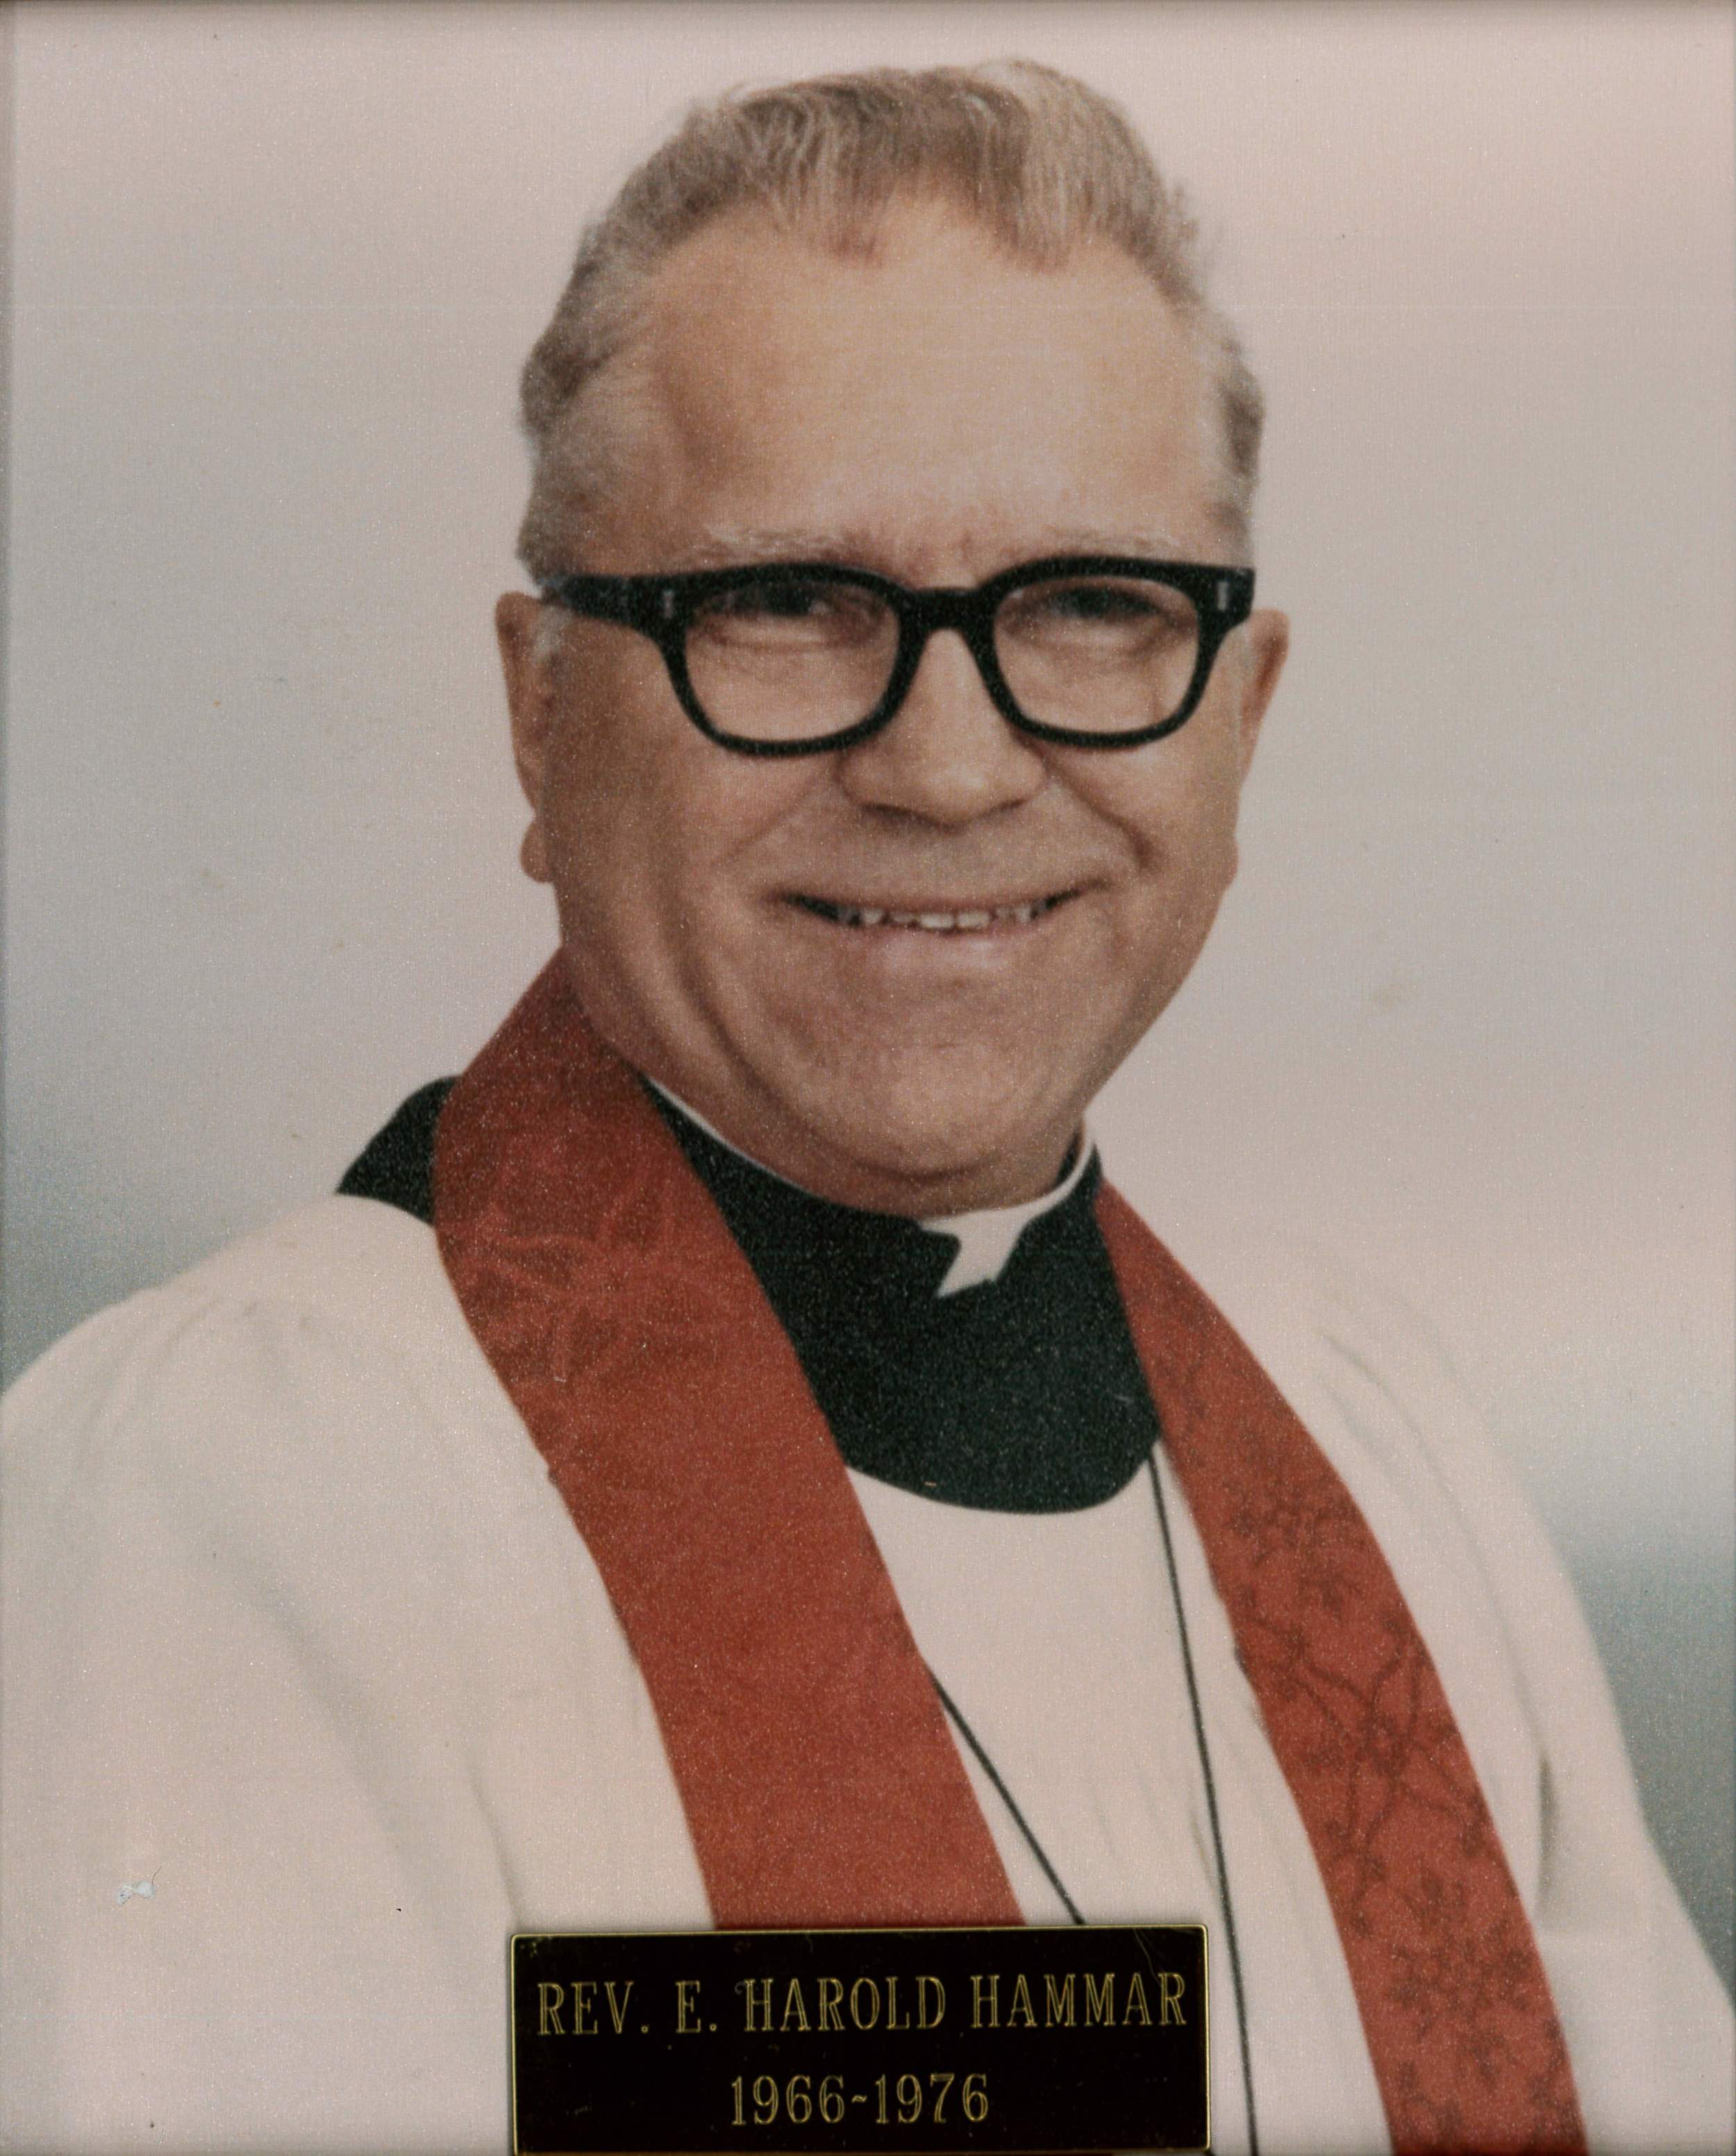 Rev. E. Harold Hammer